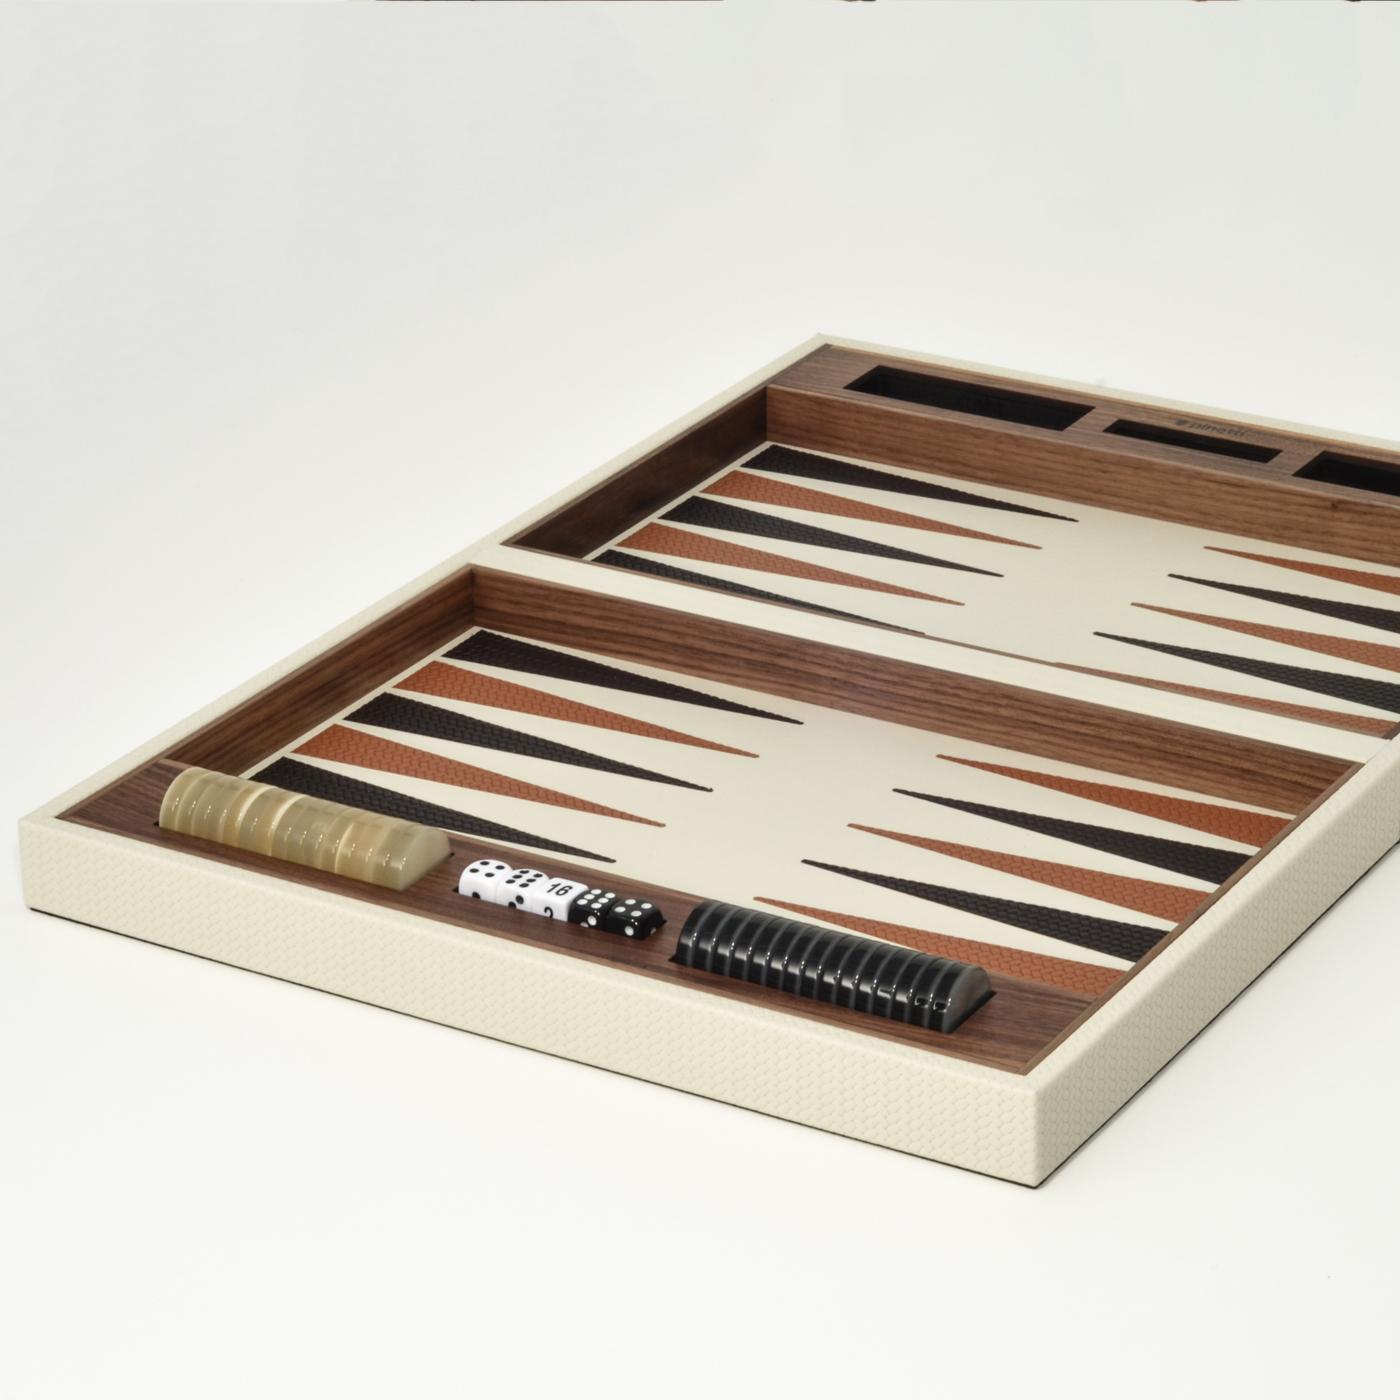 Dynamique et imprévisible, ce jeu de plateau de backgammon est une pièce d'accent somptueuse pour les intérieurs modernes et traditionnels. Le coffret est fabriqué exclusivement en noyer Canaletto, et l'intérieur présente un design coloré avec des